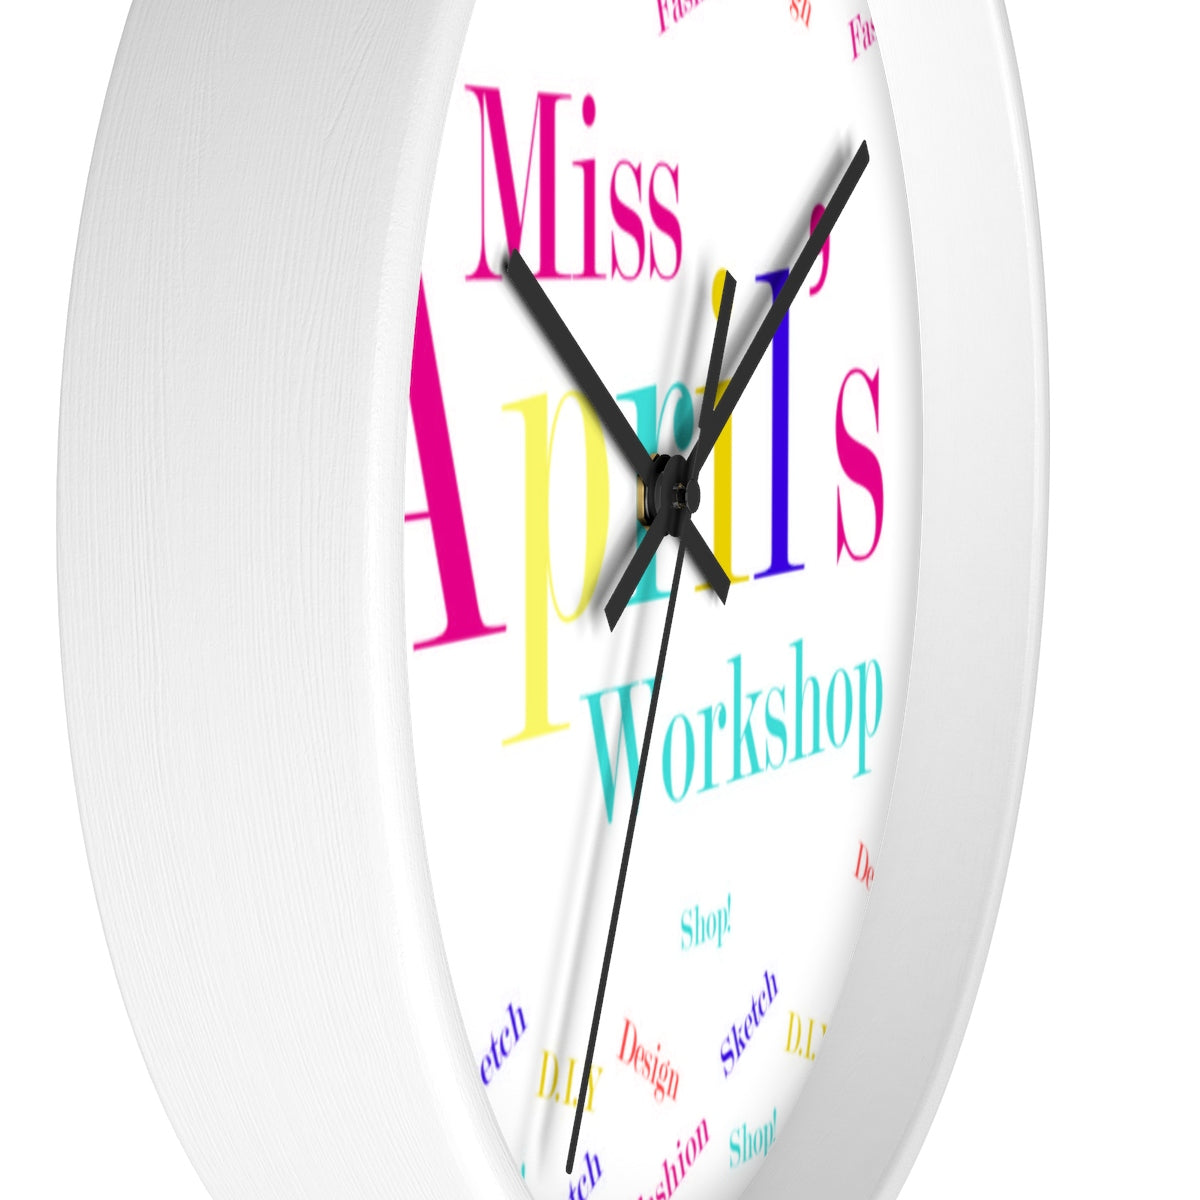 MISS APRIL'S WORKSHOP Wall clock